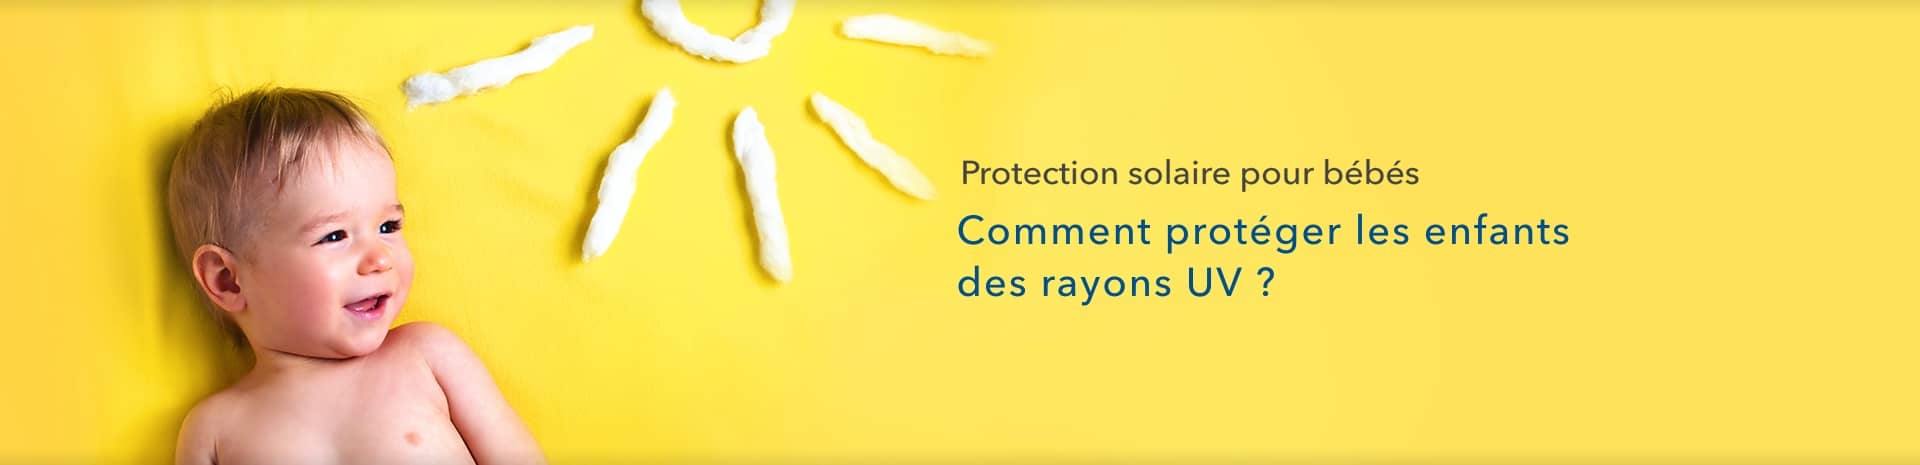 Protection solaire pour les bébés Guide